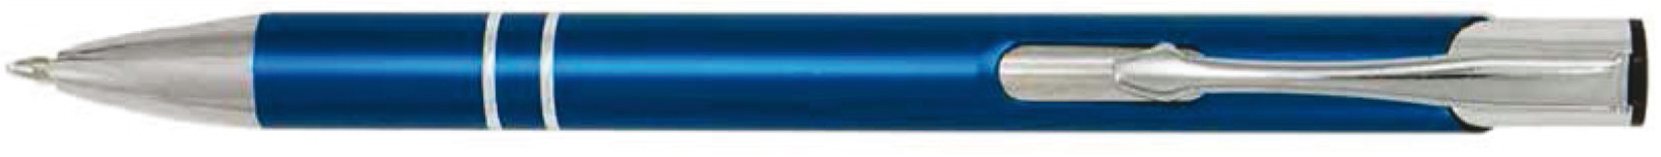 BestPen - penna promozionale in metallo con incisione C-10A